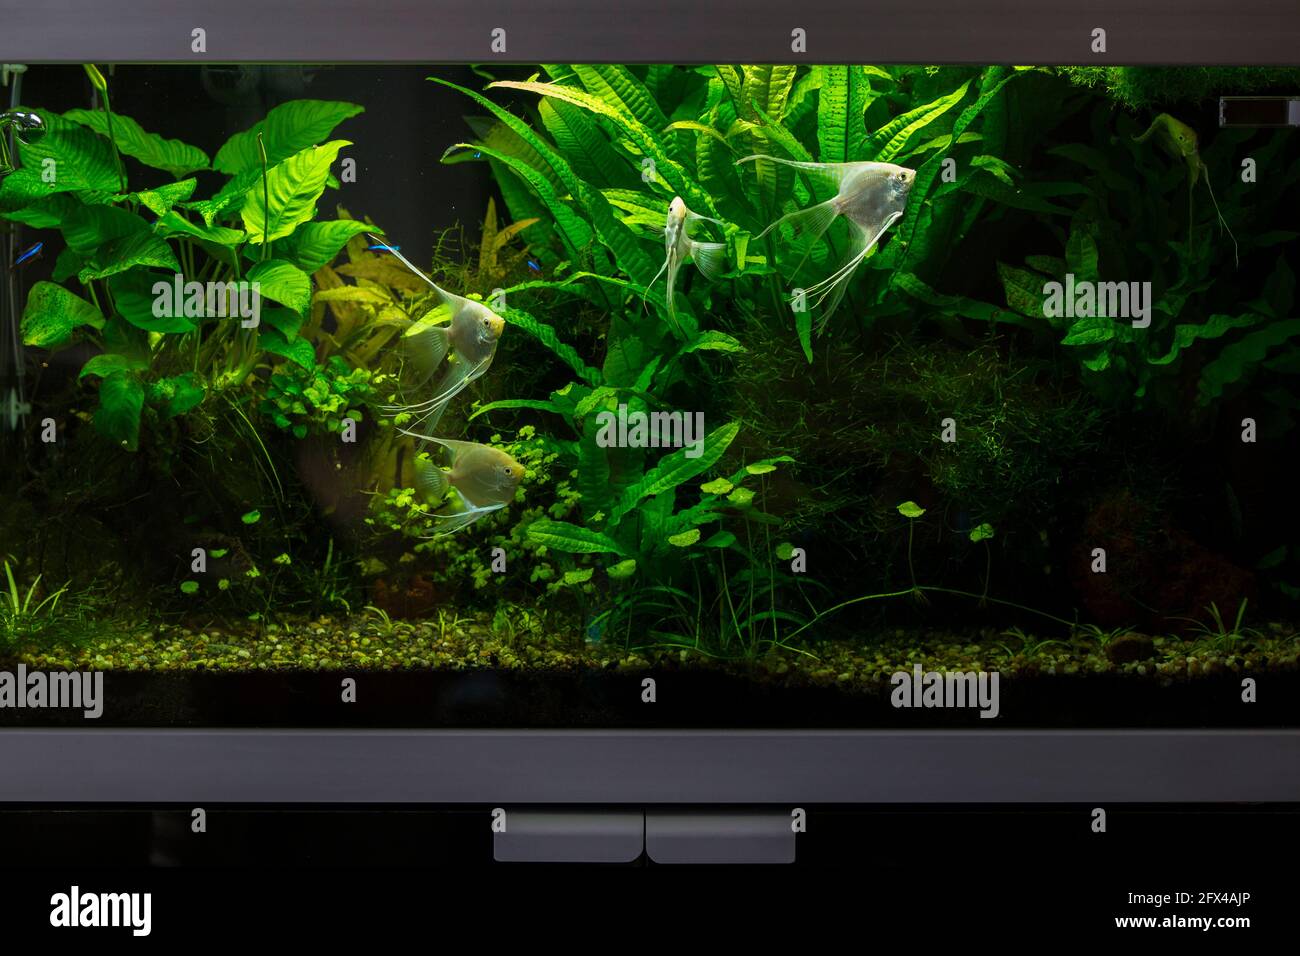 Planted aquarium with platinum angelfish Stock Photo